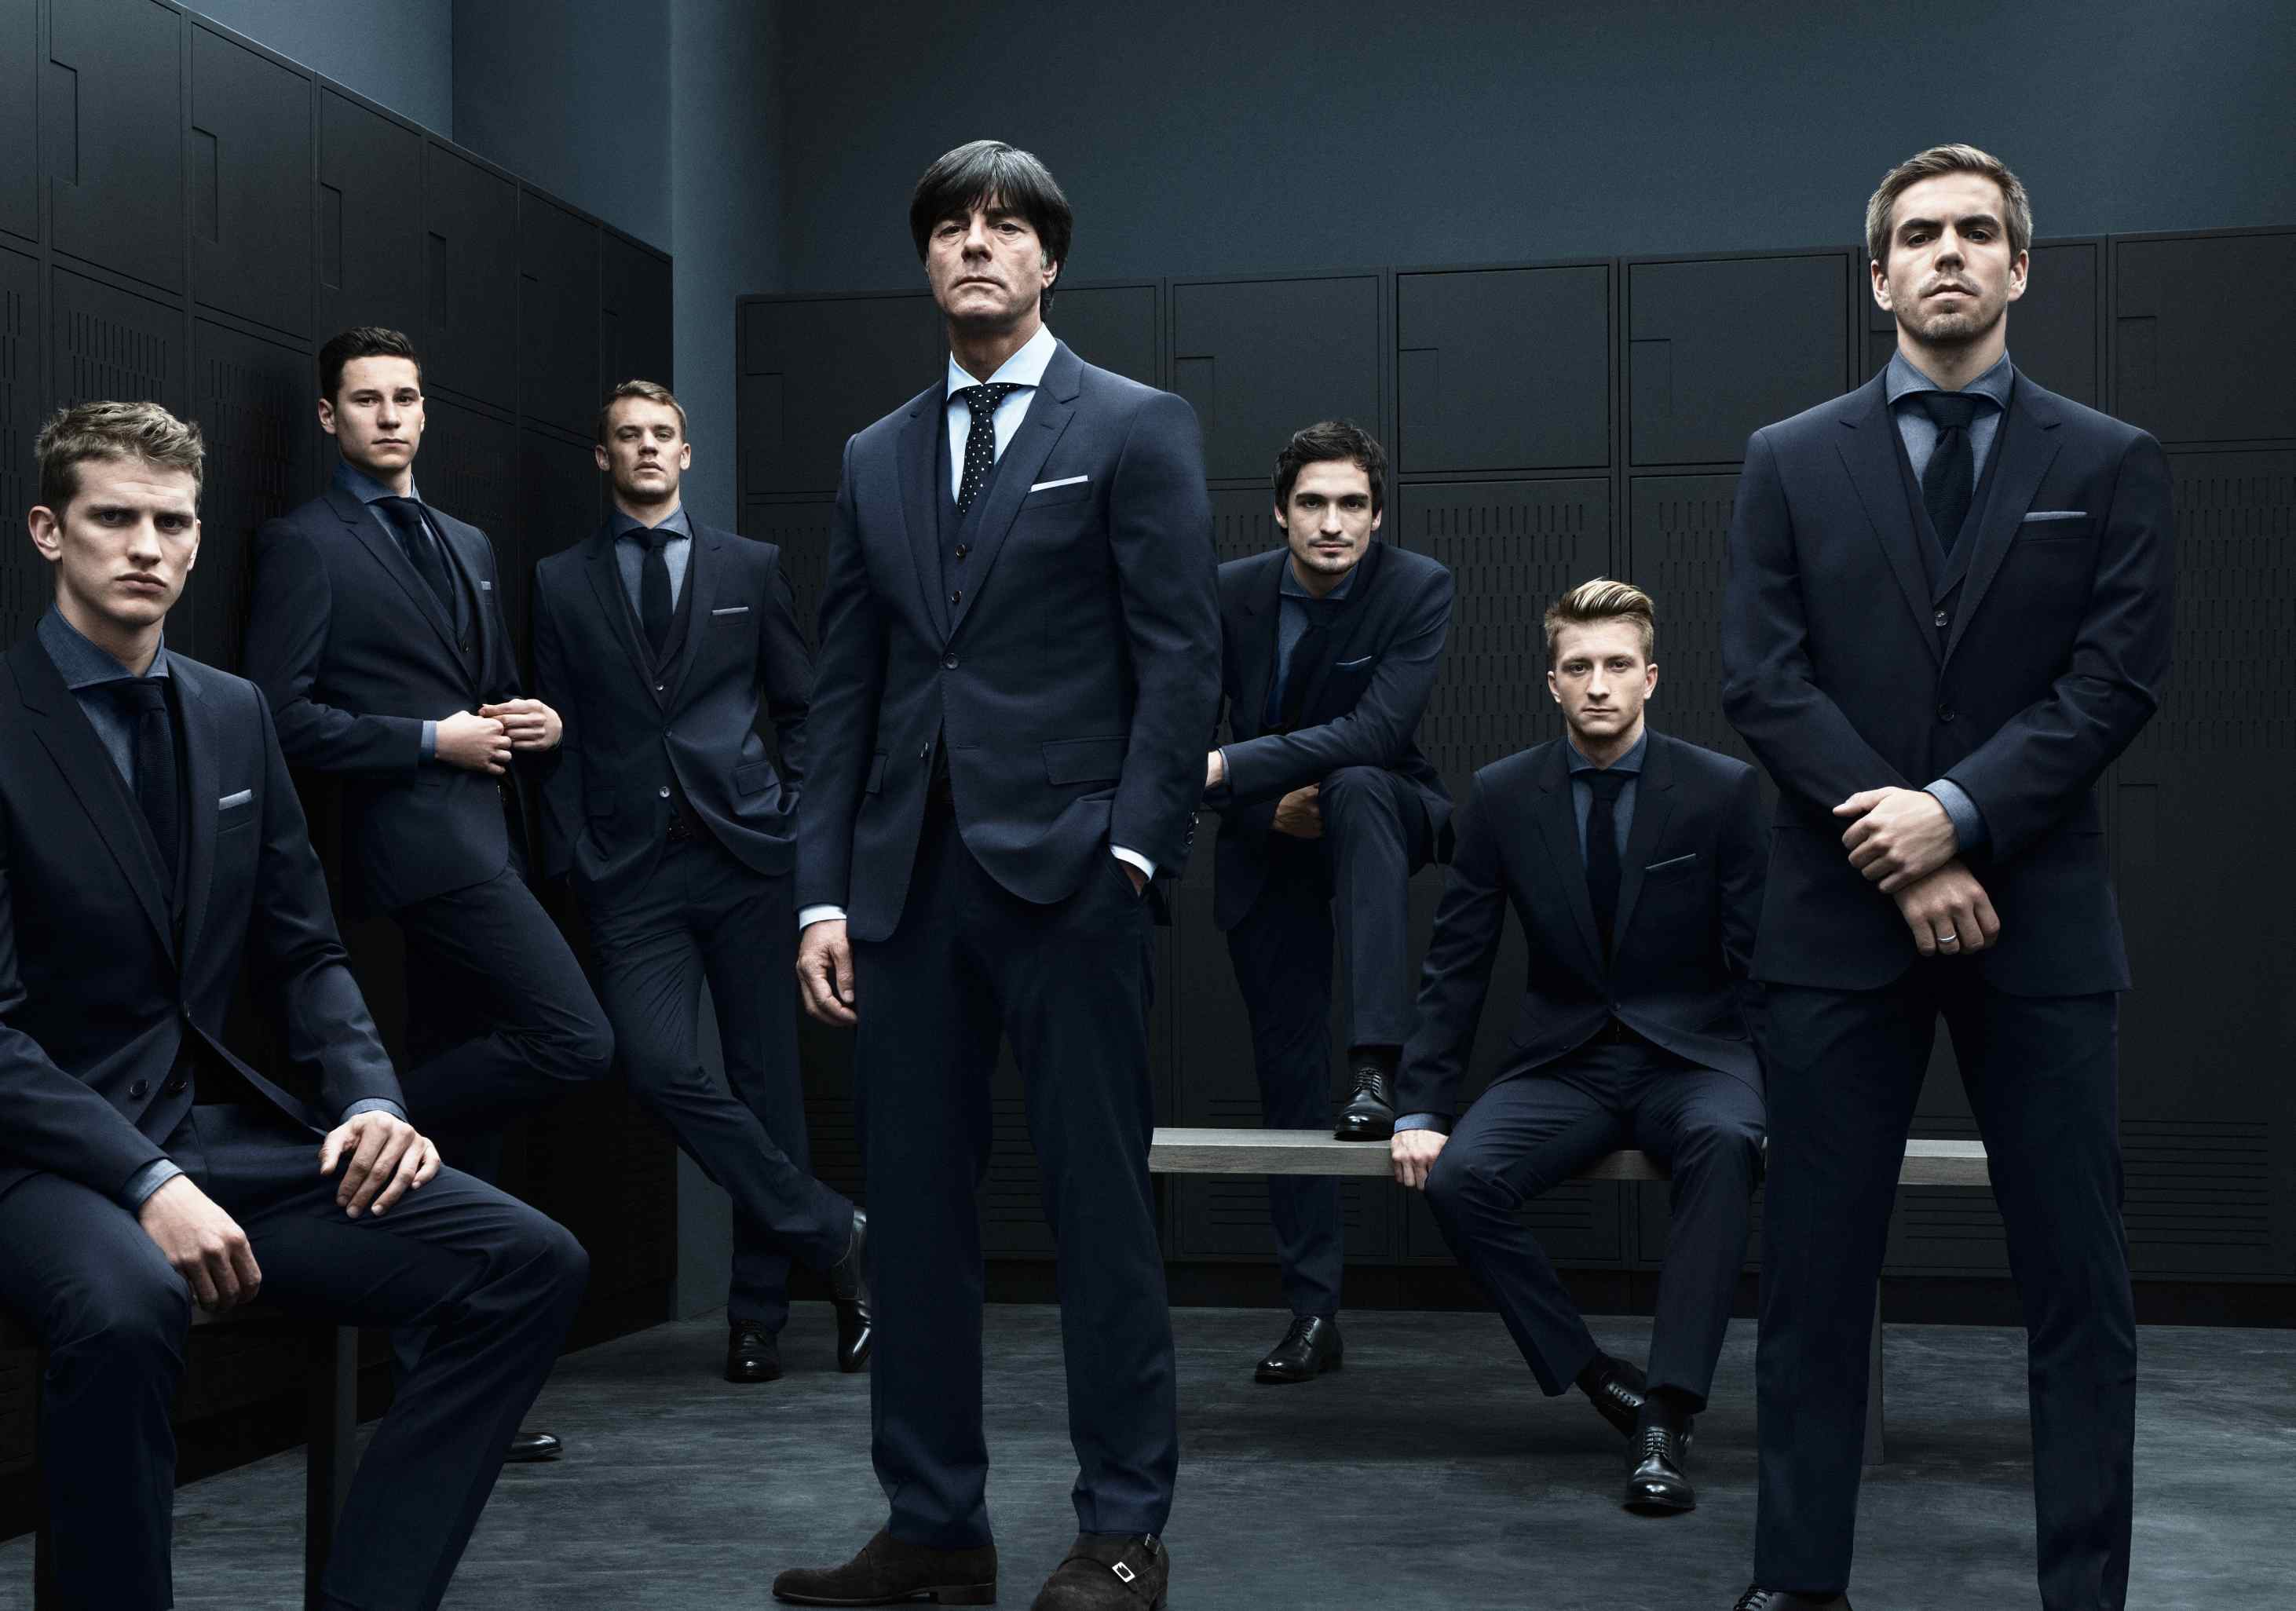 Песня семь мужчин. Сборная Германии по футболу Hugo Boss. Сборная Германии по футболу в костюмах Hugo Boss. Несколько мужчин в костюмах. Пять мужчин в костюмах.